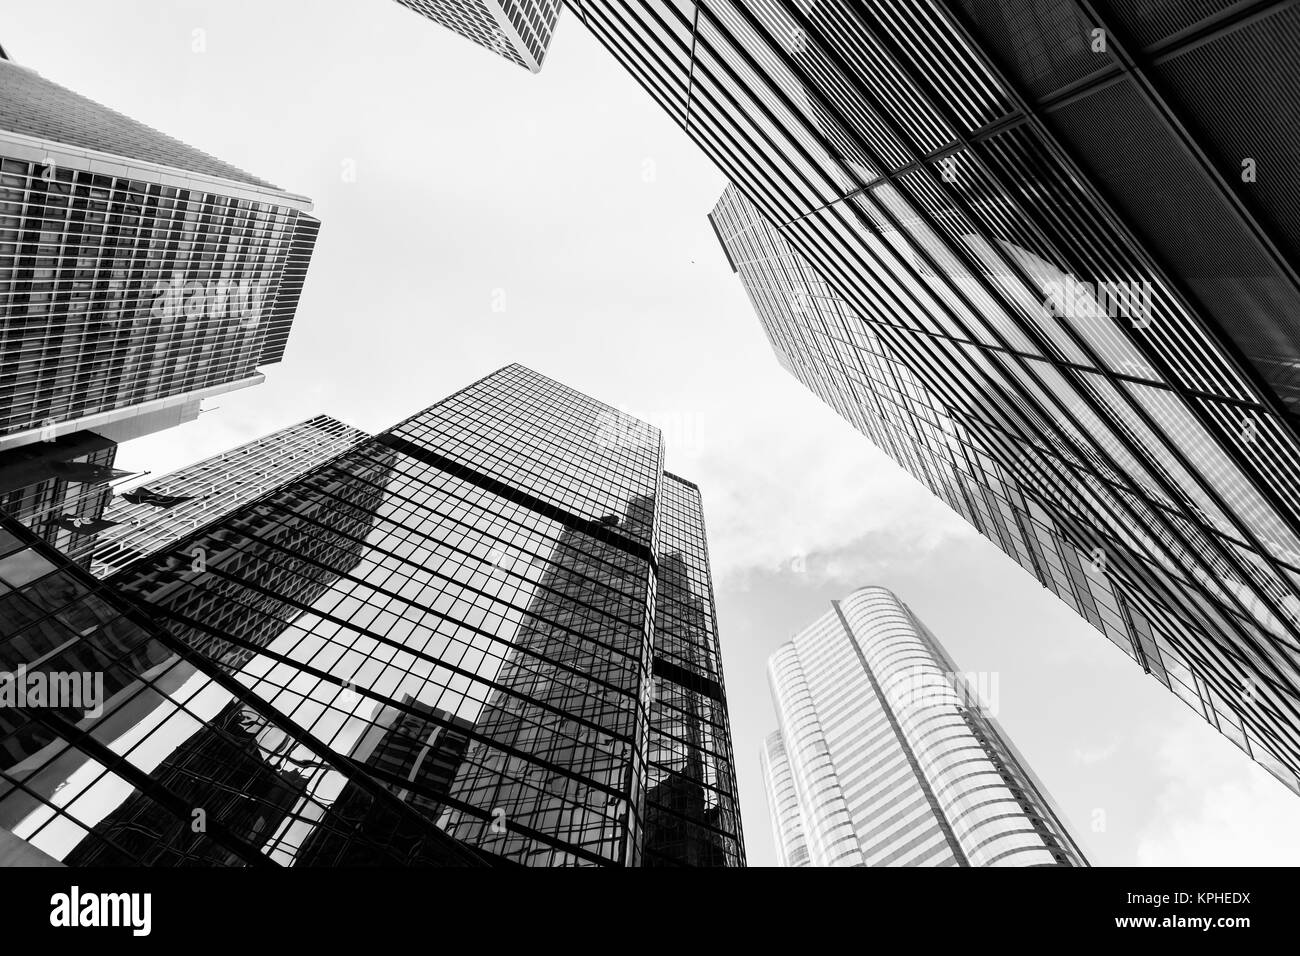 Horizonte urbano con rascacielos. Altos edificios de oficina en la ciudad de Hong Kong. Fotografía en blanco y negro Foto de stock